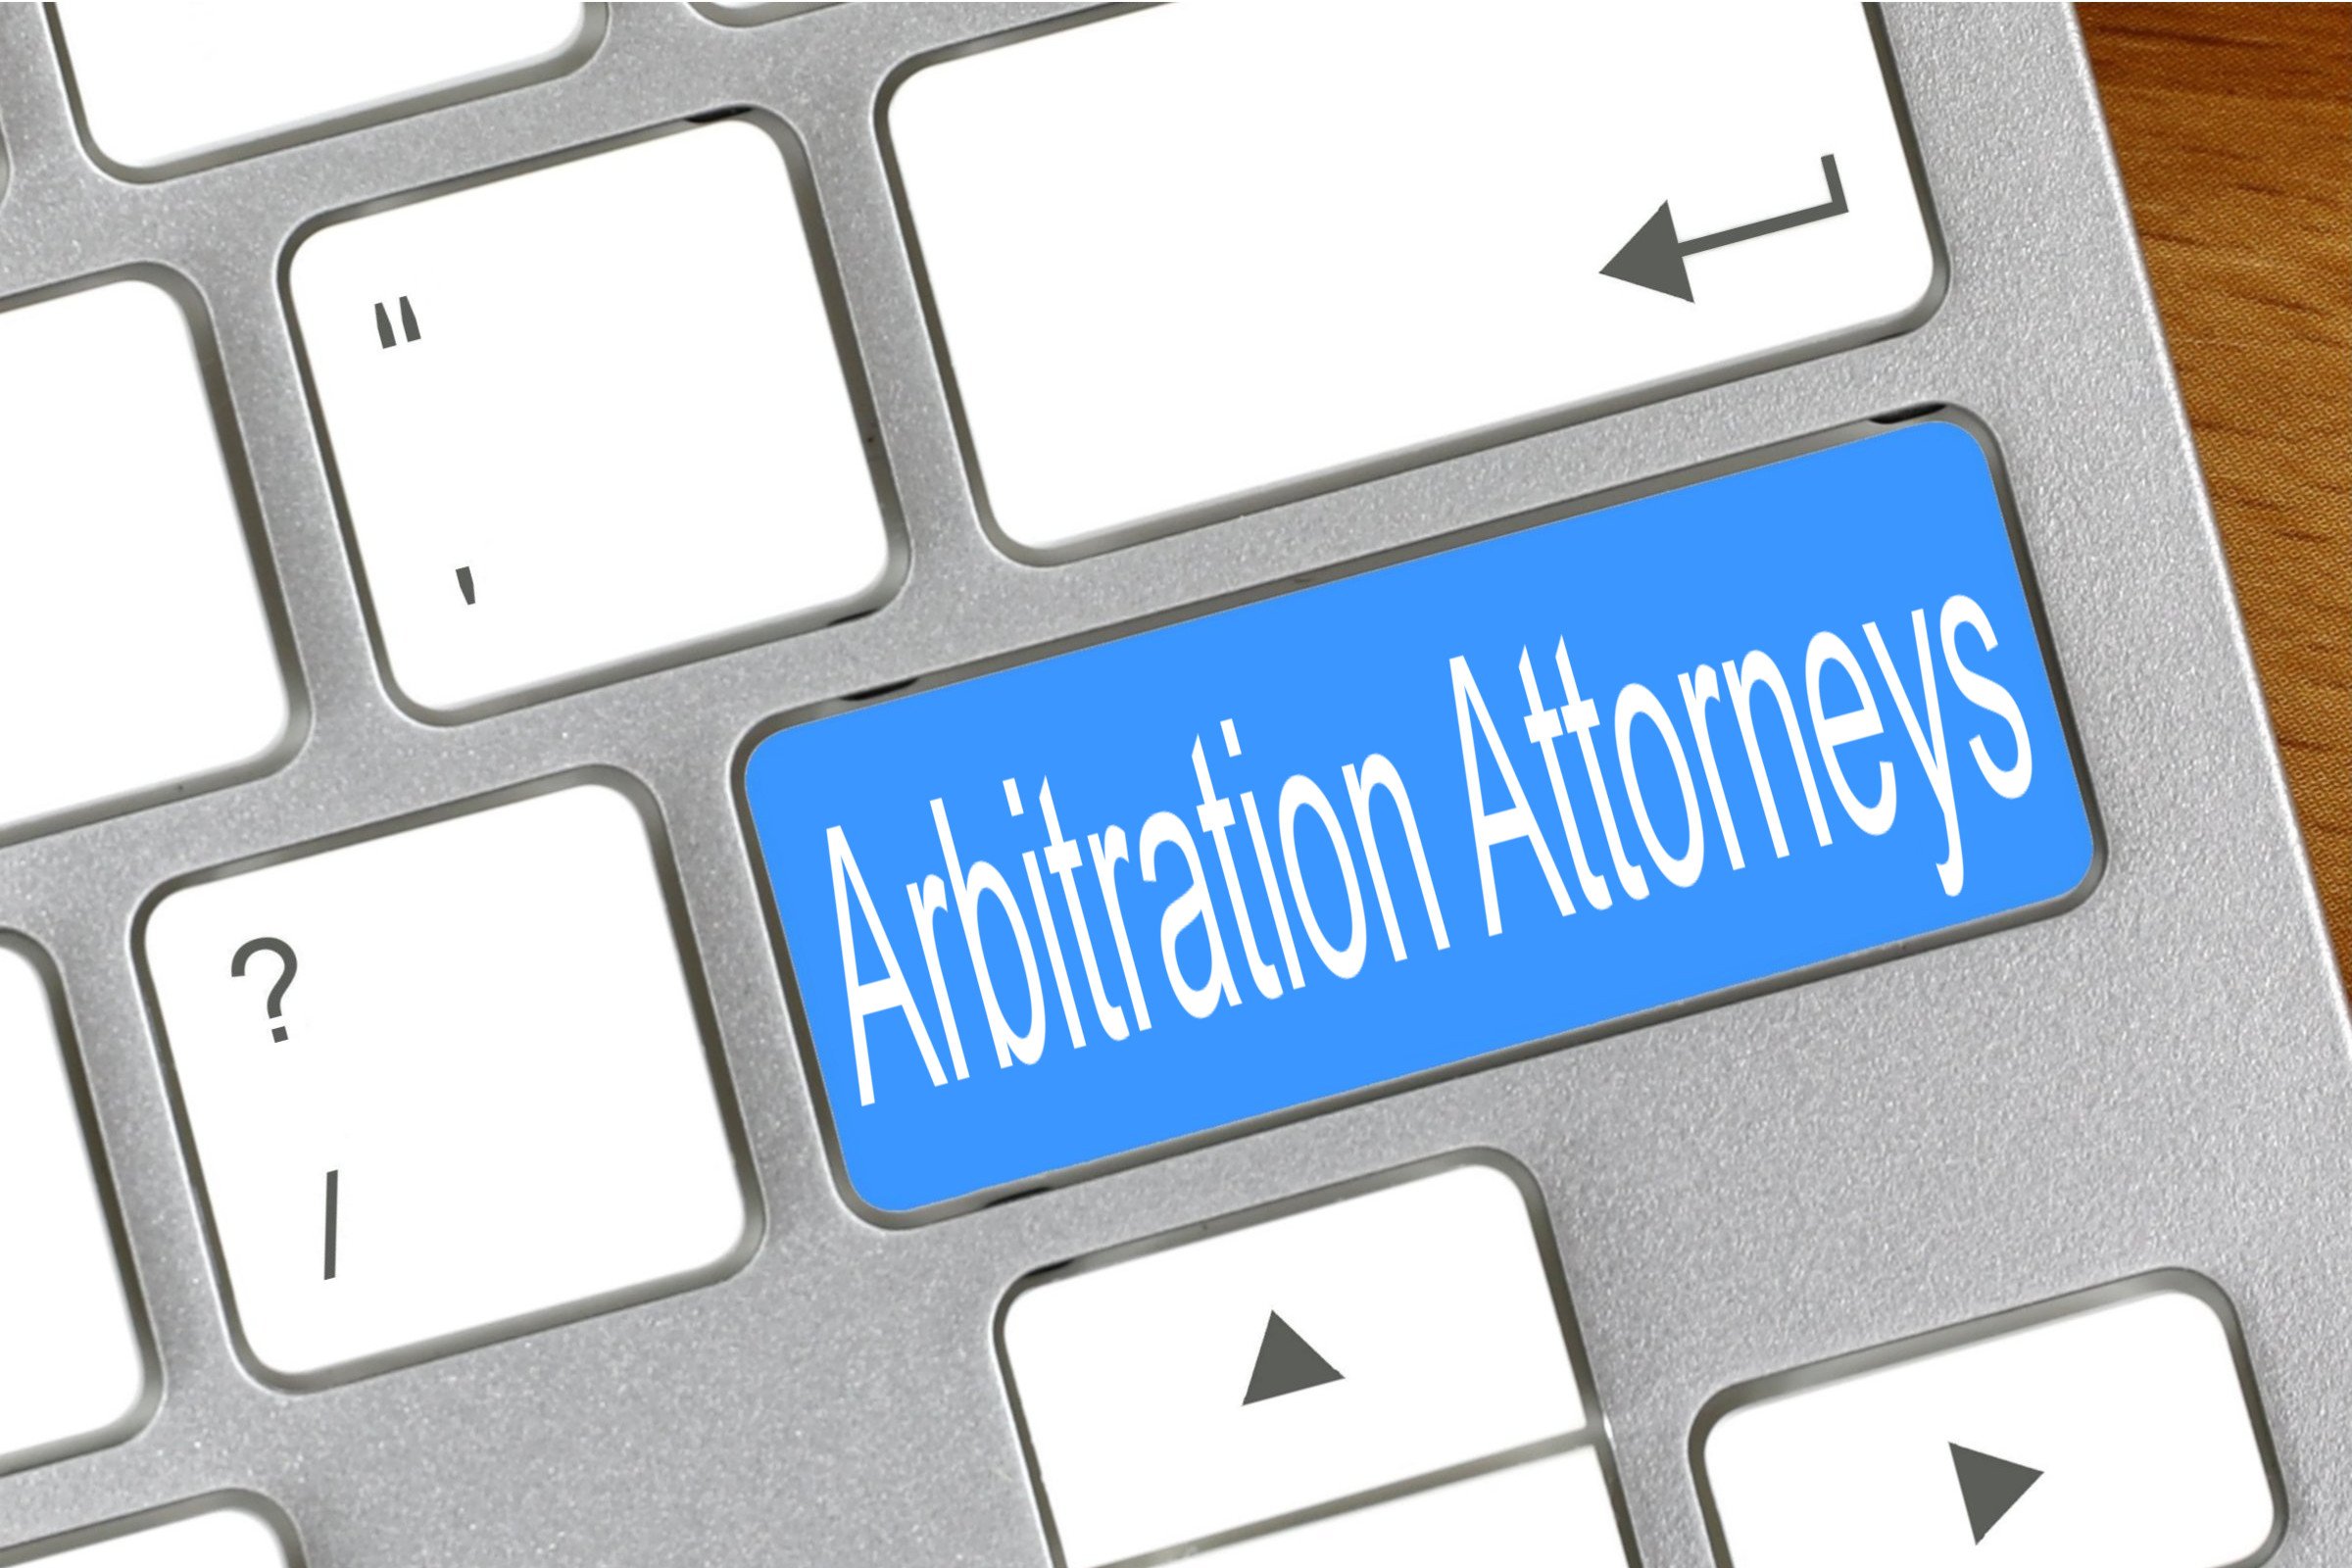 arbitration attorneys